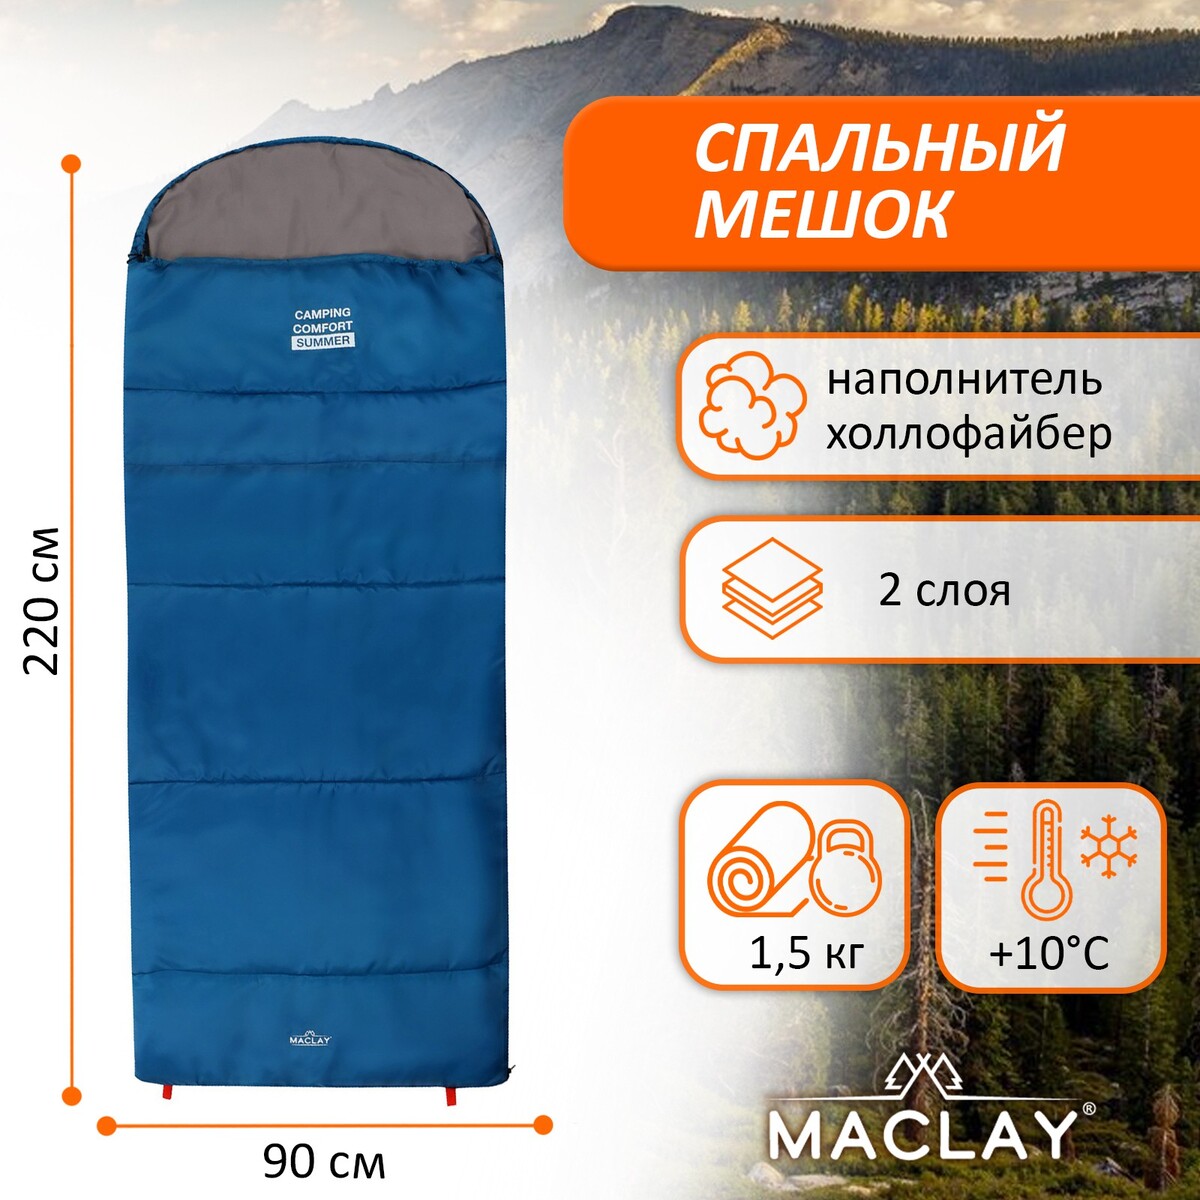 Спальный мешок maclay camping comfort summer, 2 слоя, правый, с подголовником, 220х90 см, +10/+25°с спальный мешок maclay 1 5 слоя 185х90 см 10 25°с эконом